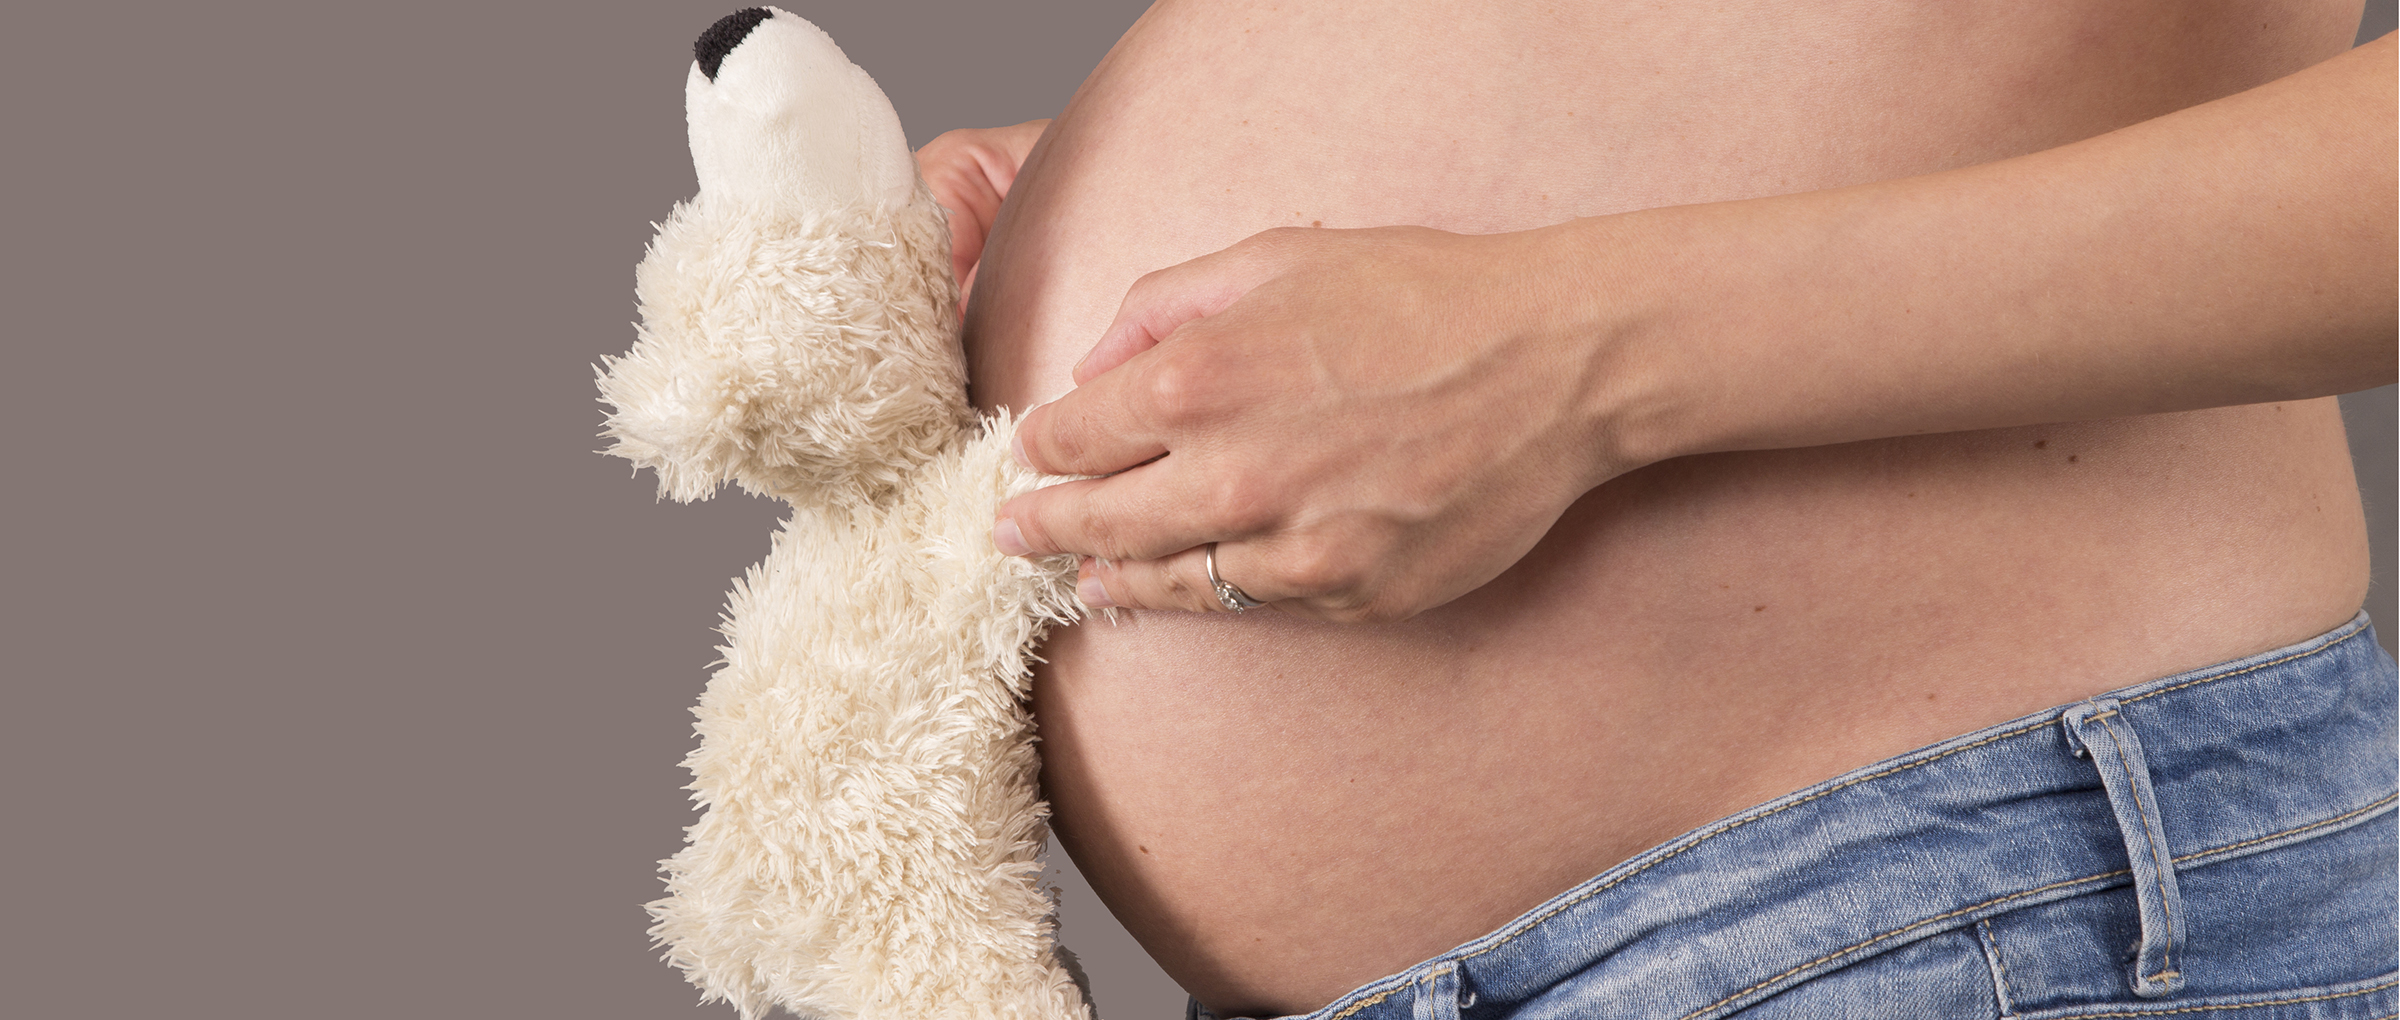 Maternidad por gestación subrogada en EEUU